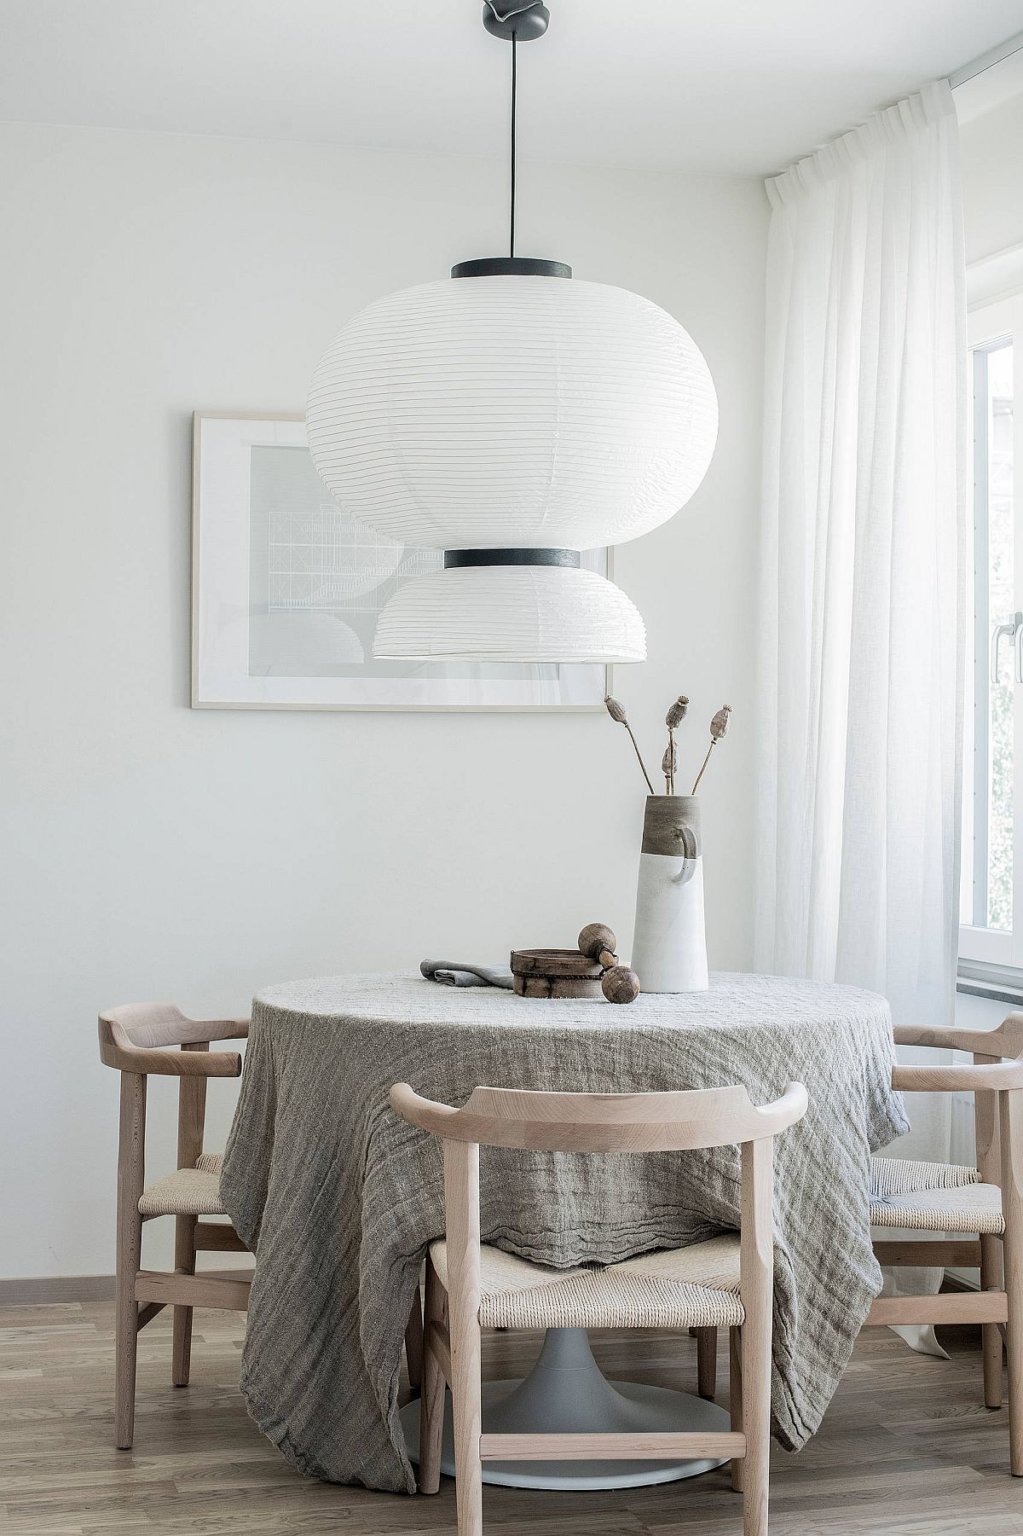 Hình ảnh phòng ăn nhỏ màu trắng với bàn gỗ tròn phủ khăn trải xám, đèn thả khổ lớn tạo điểm nhấn ấn tượng